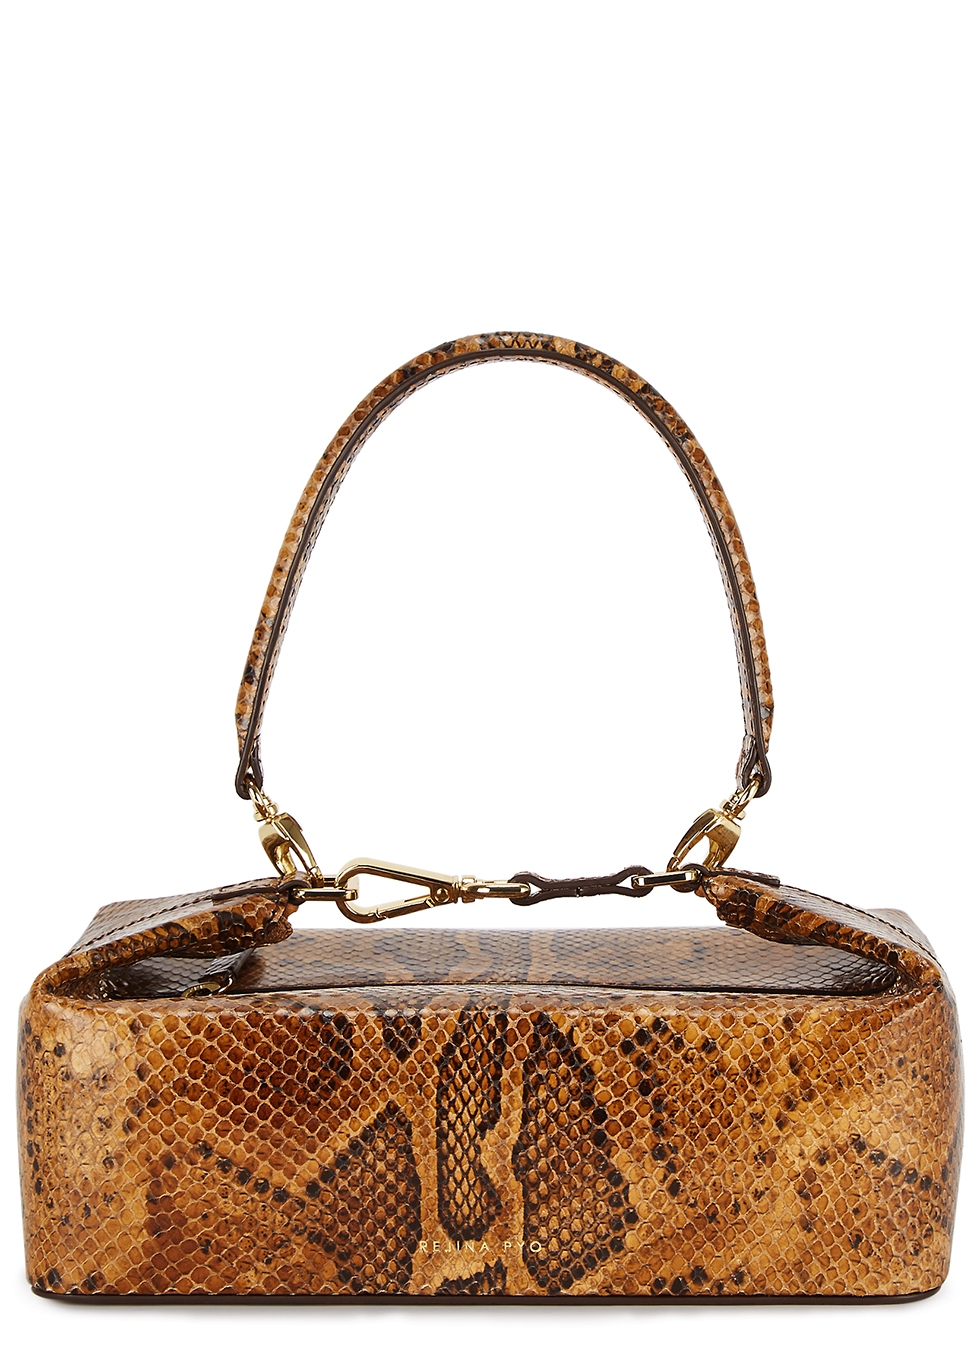 Olivia brown python-effect top handle bag